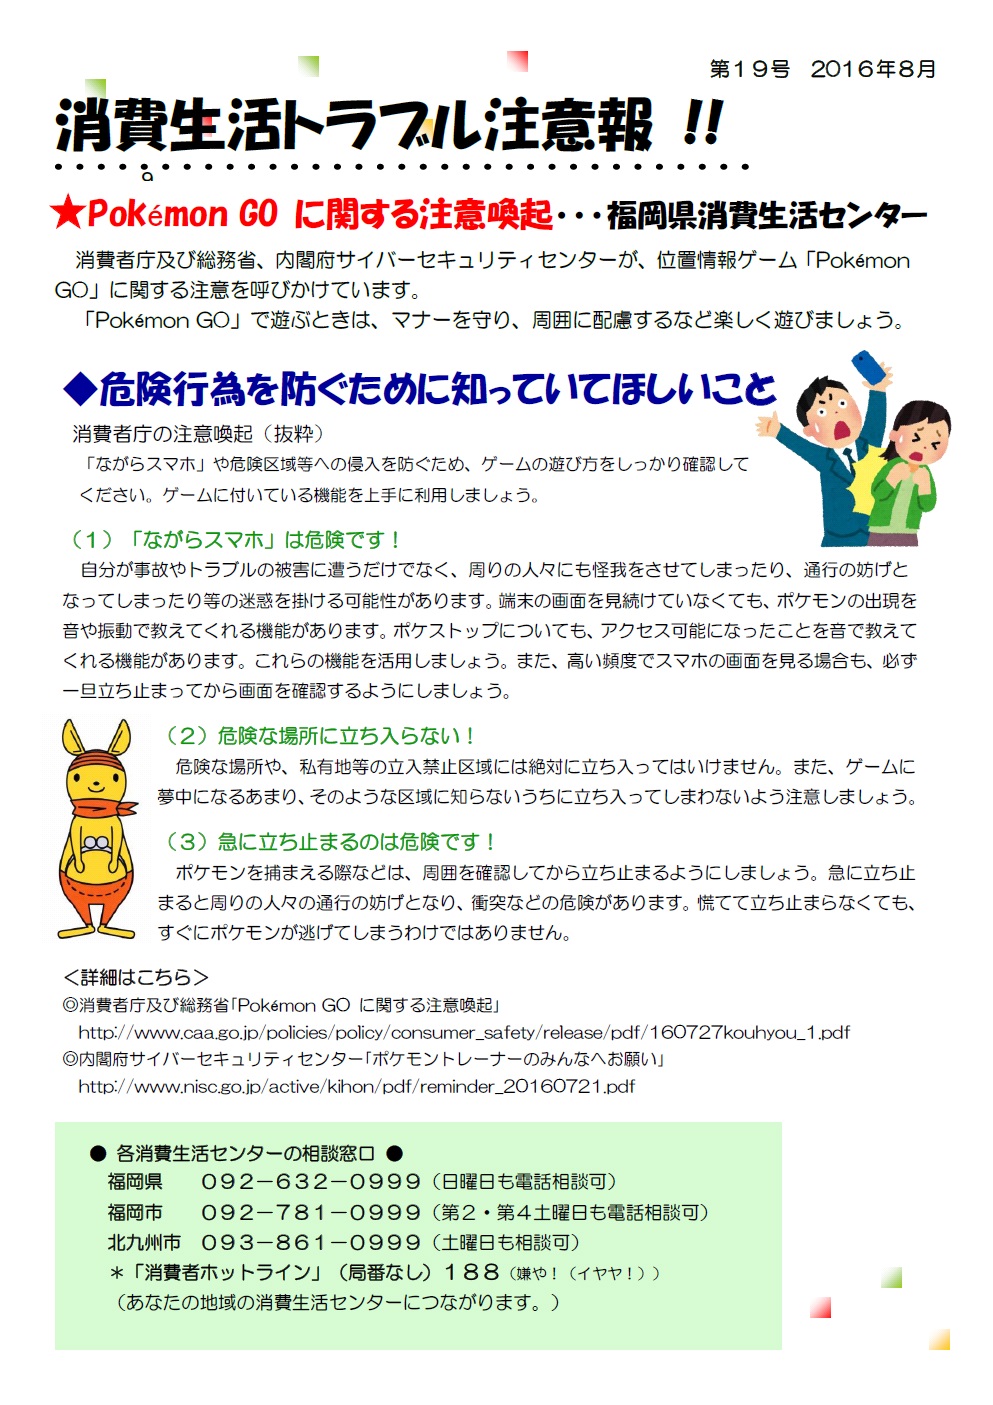 ポケモンgoに関する注意喚起 糸島市 消費生活センター